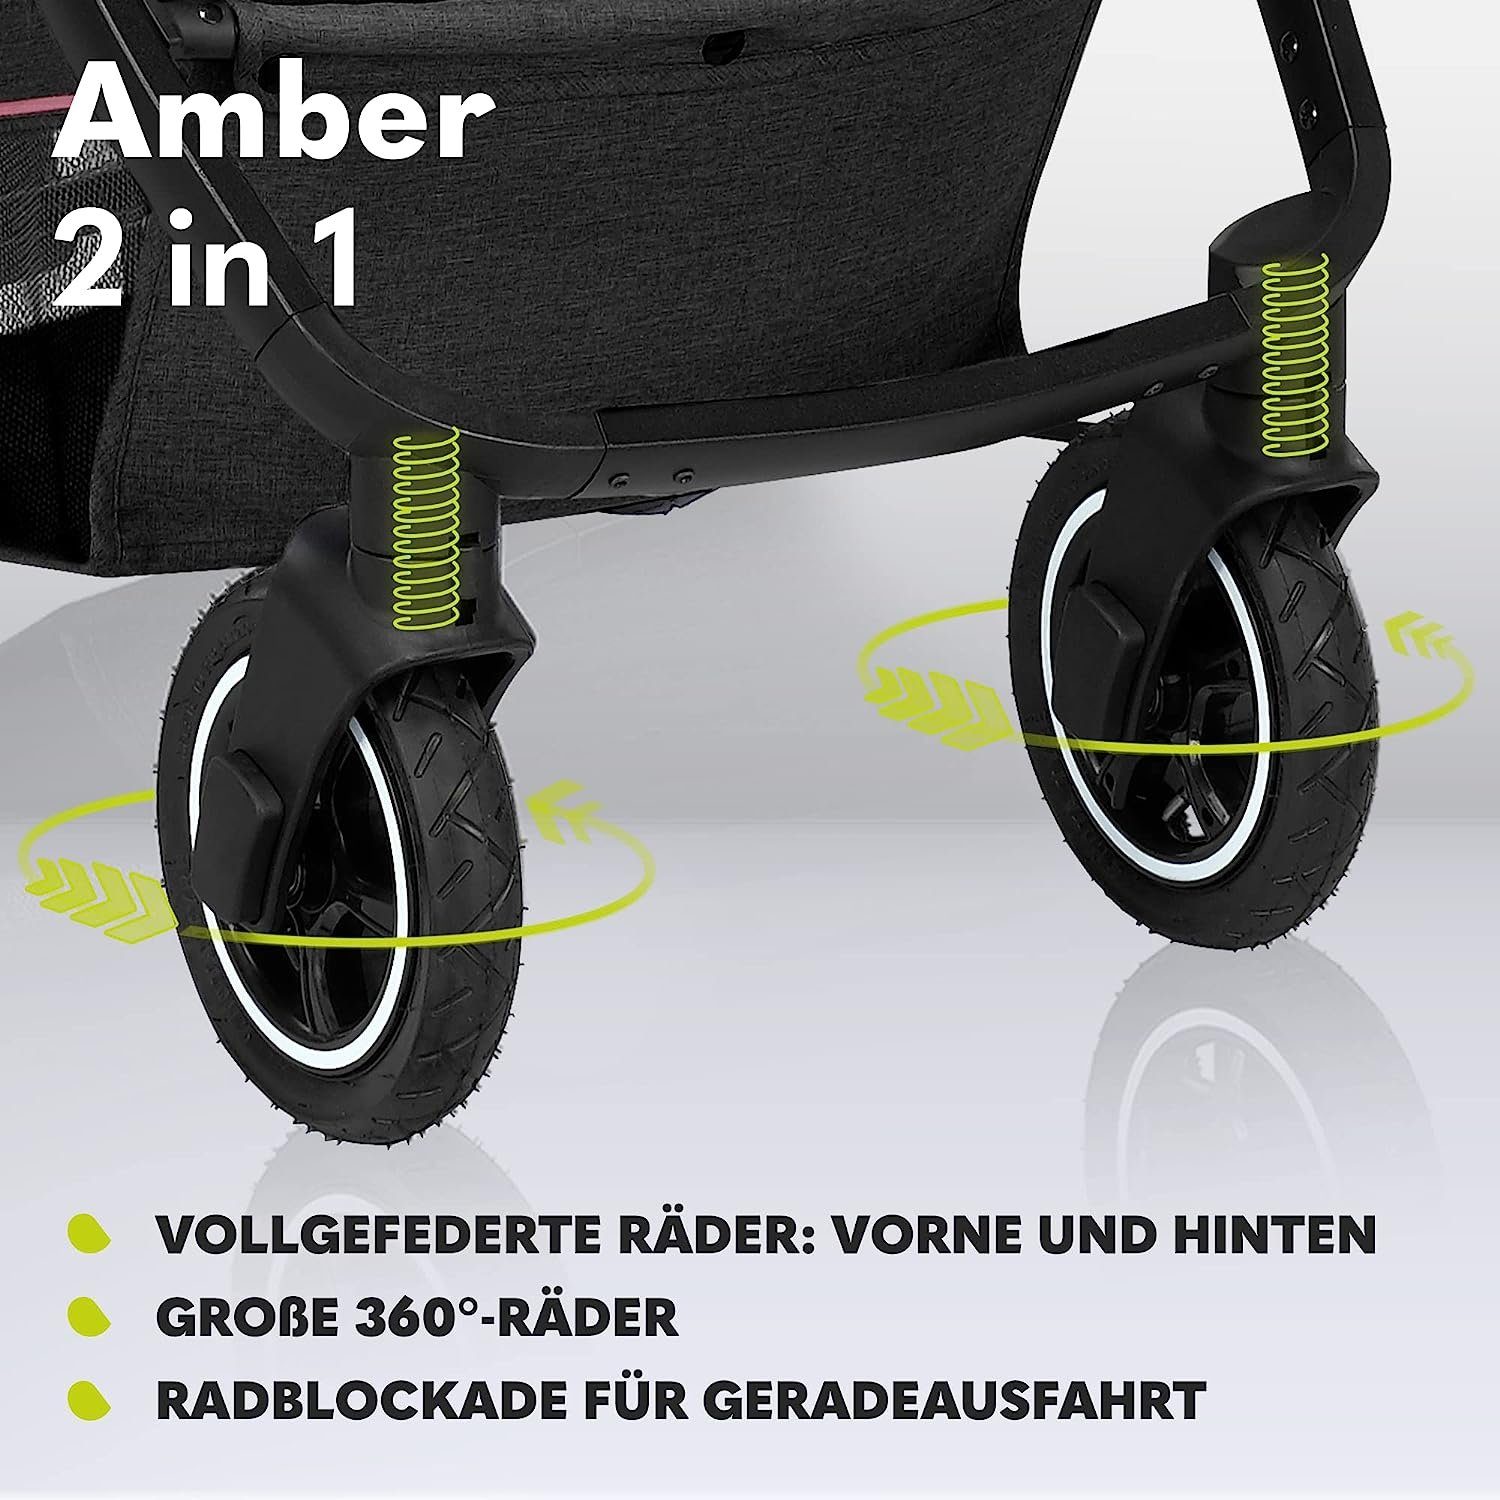 Regenschutz Rosa Schutzüberzug lionelo Kombi-Kinderwagen Moskitonetz Tasche 2in1 Amber,